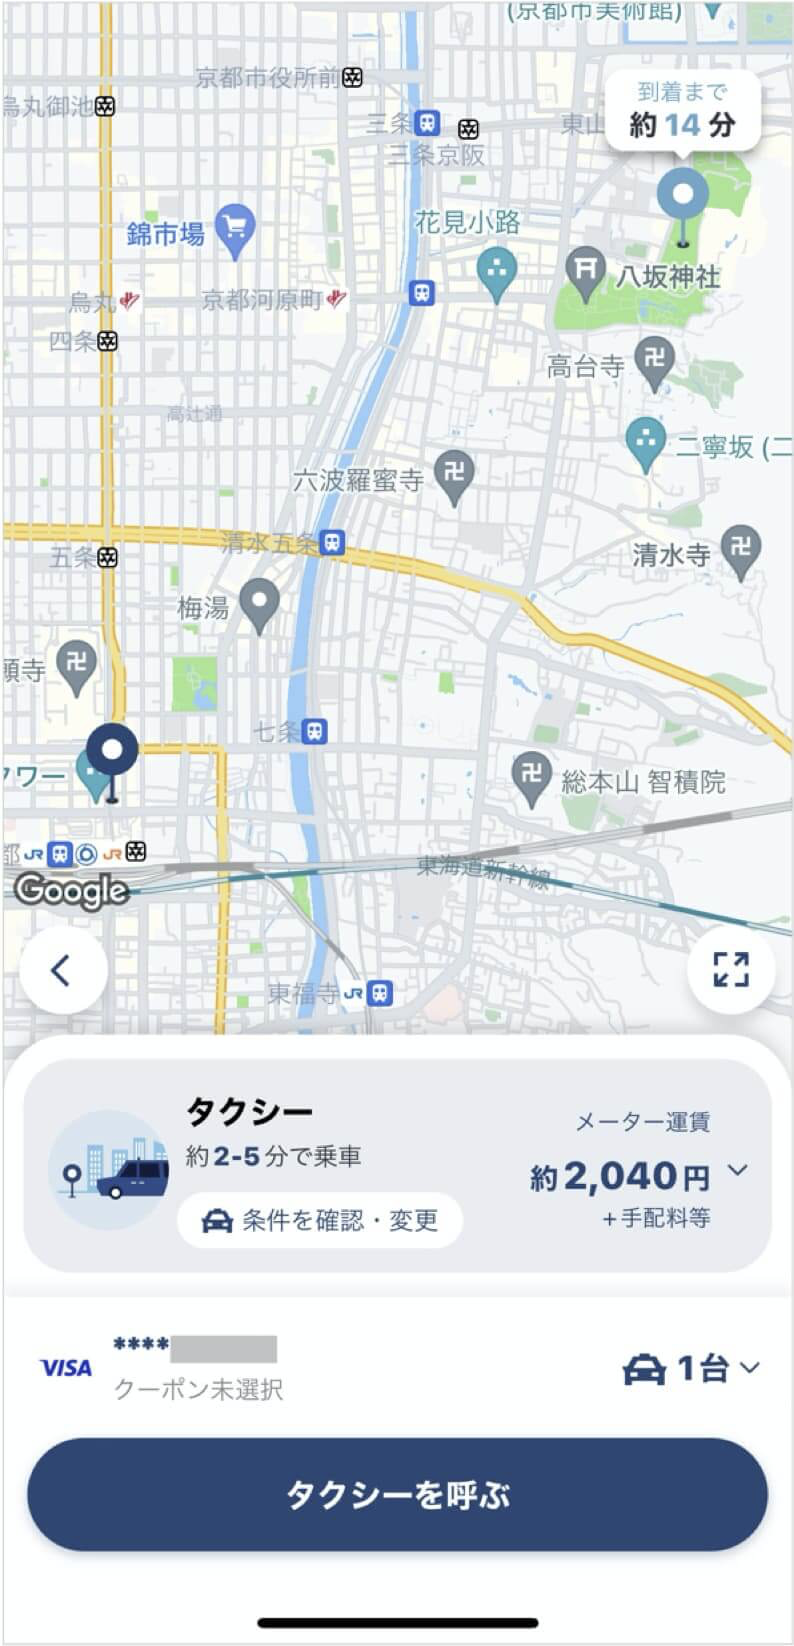 京都駅から知恩院までのタクシー料金・所要時間まとめ